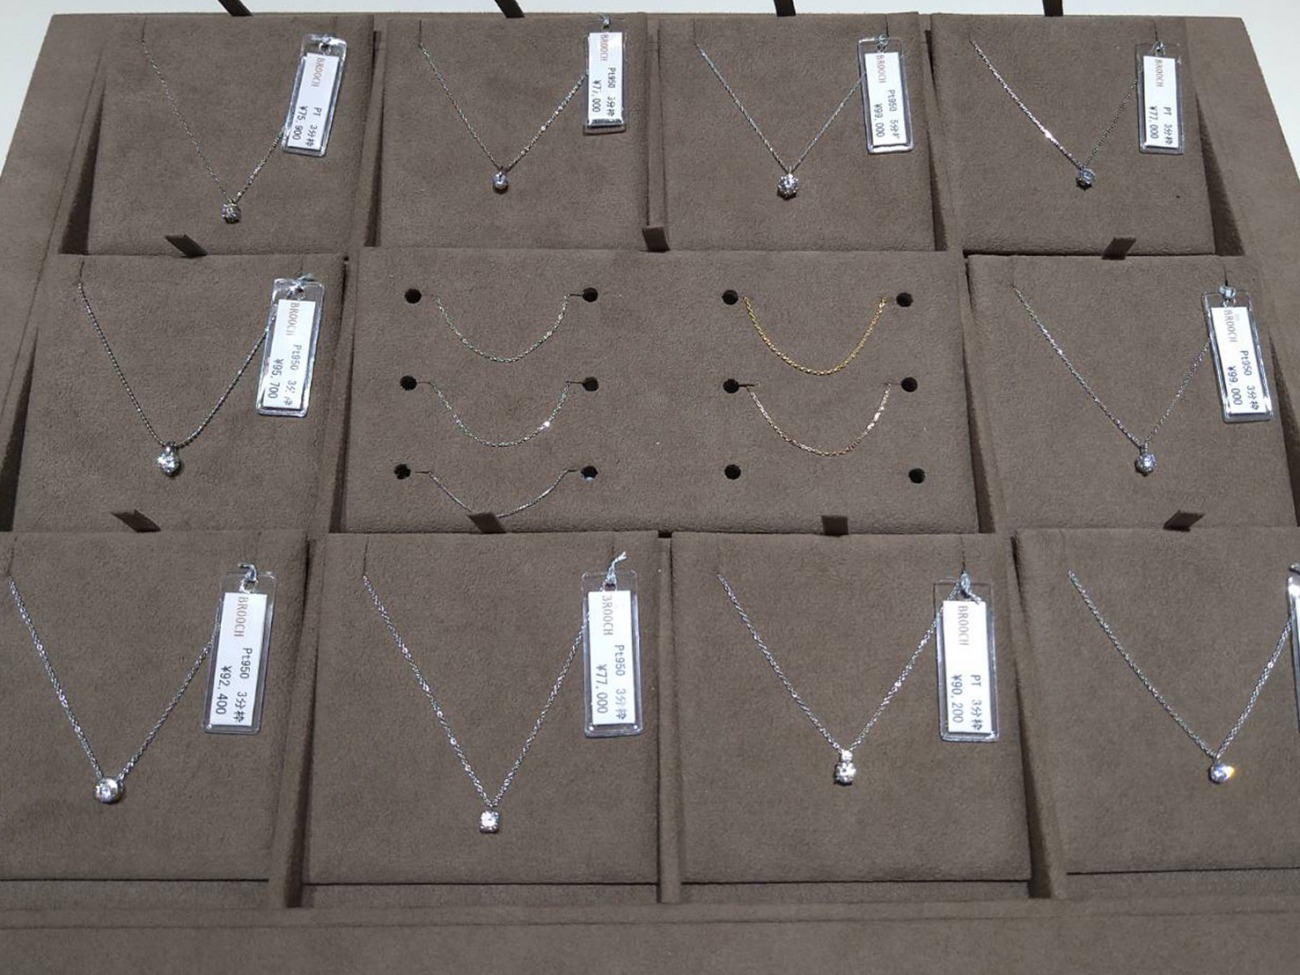 新潟のブローチではネックレスのデザインとダイヤモンドを組み合わせてプロポーズ出来る